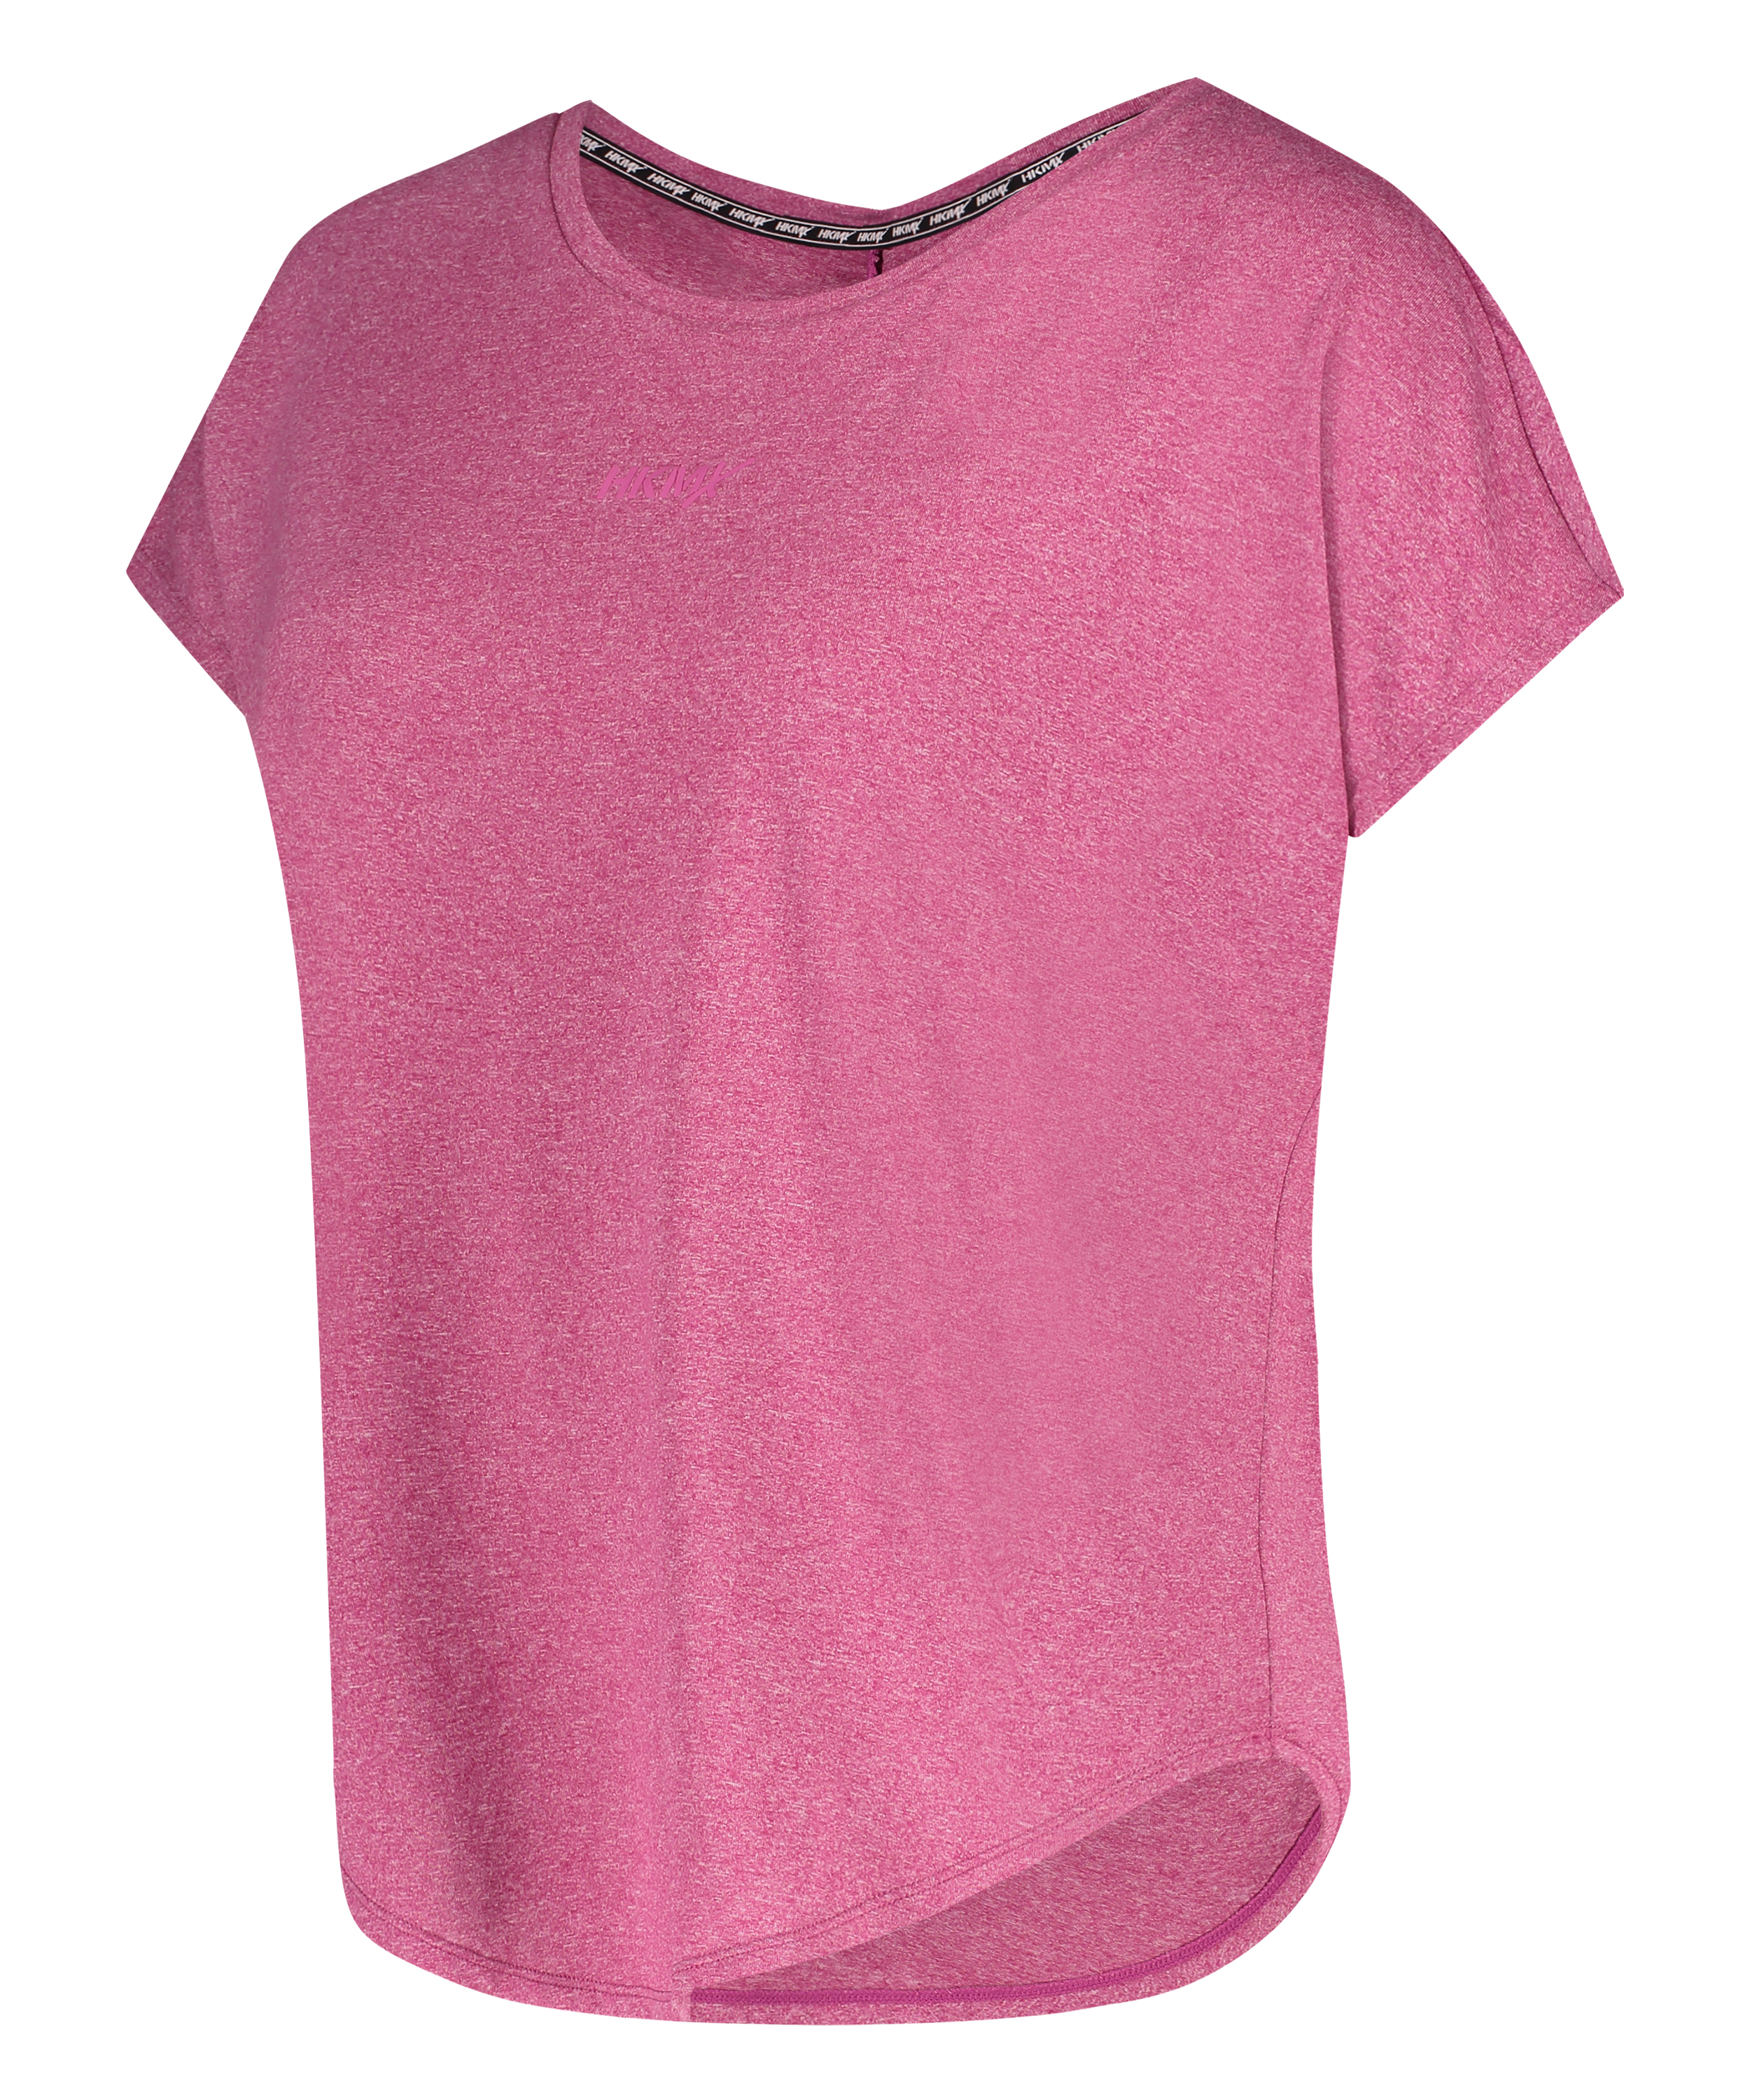 HKMX Sports-t-shirt Asana, pink, main